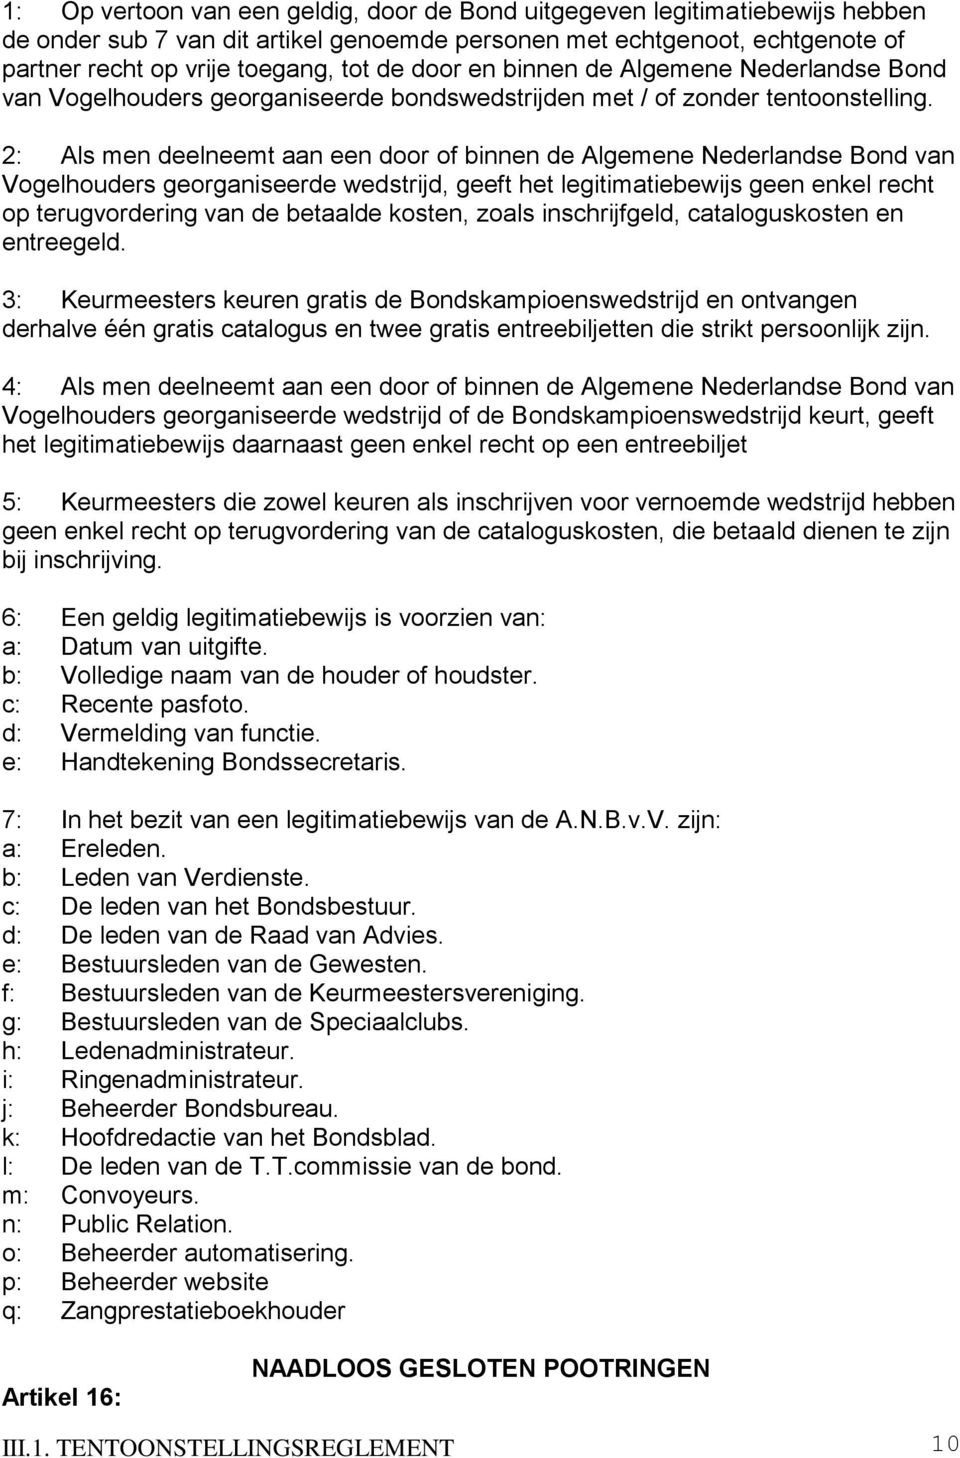 2: Als men deelneemt aan een door of binnen de Algemene Nederlandse Bond van Vogelhouders georganiseerde wedstrijd, geeft het legitimatiebewijs geen enkel recht op terugvordering van de betaalde